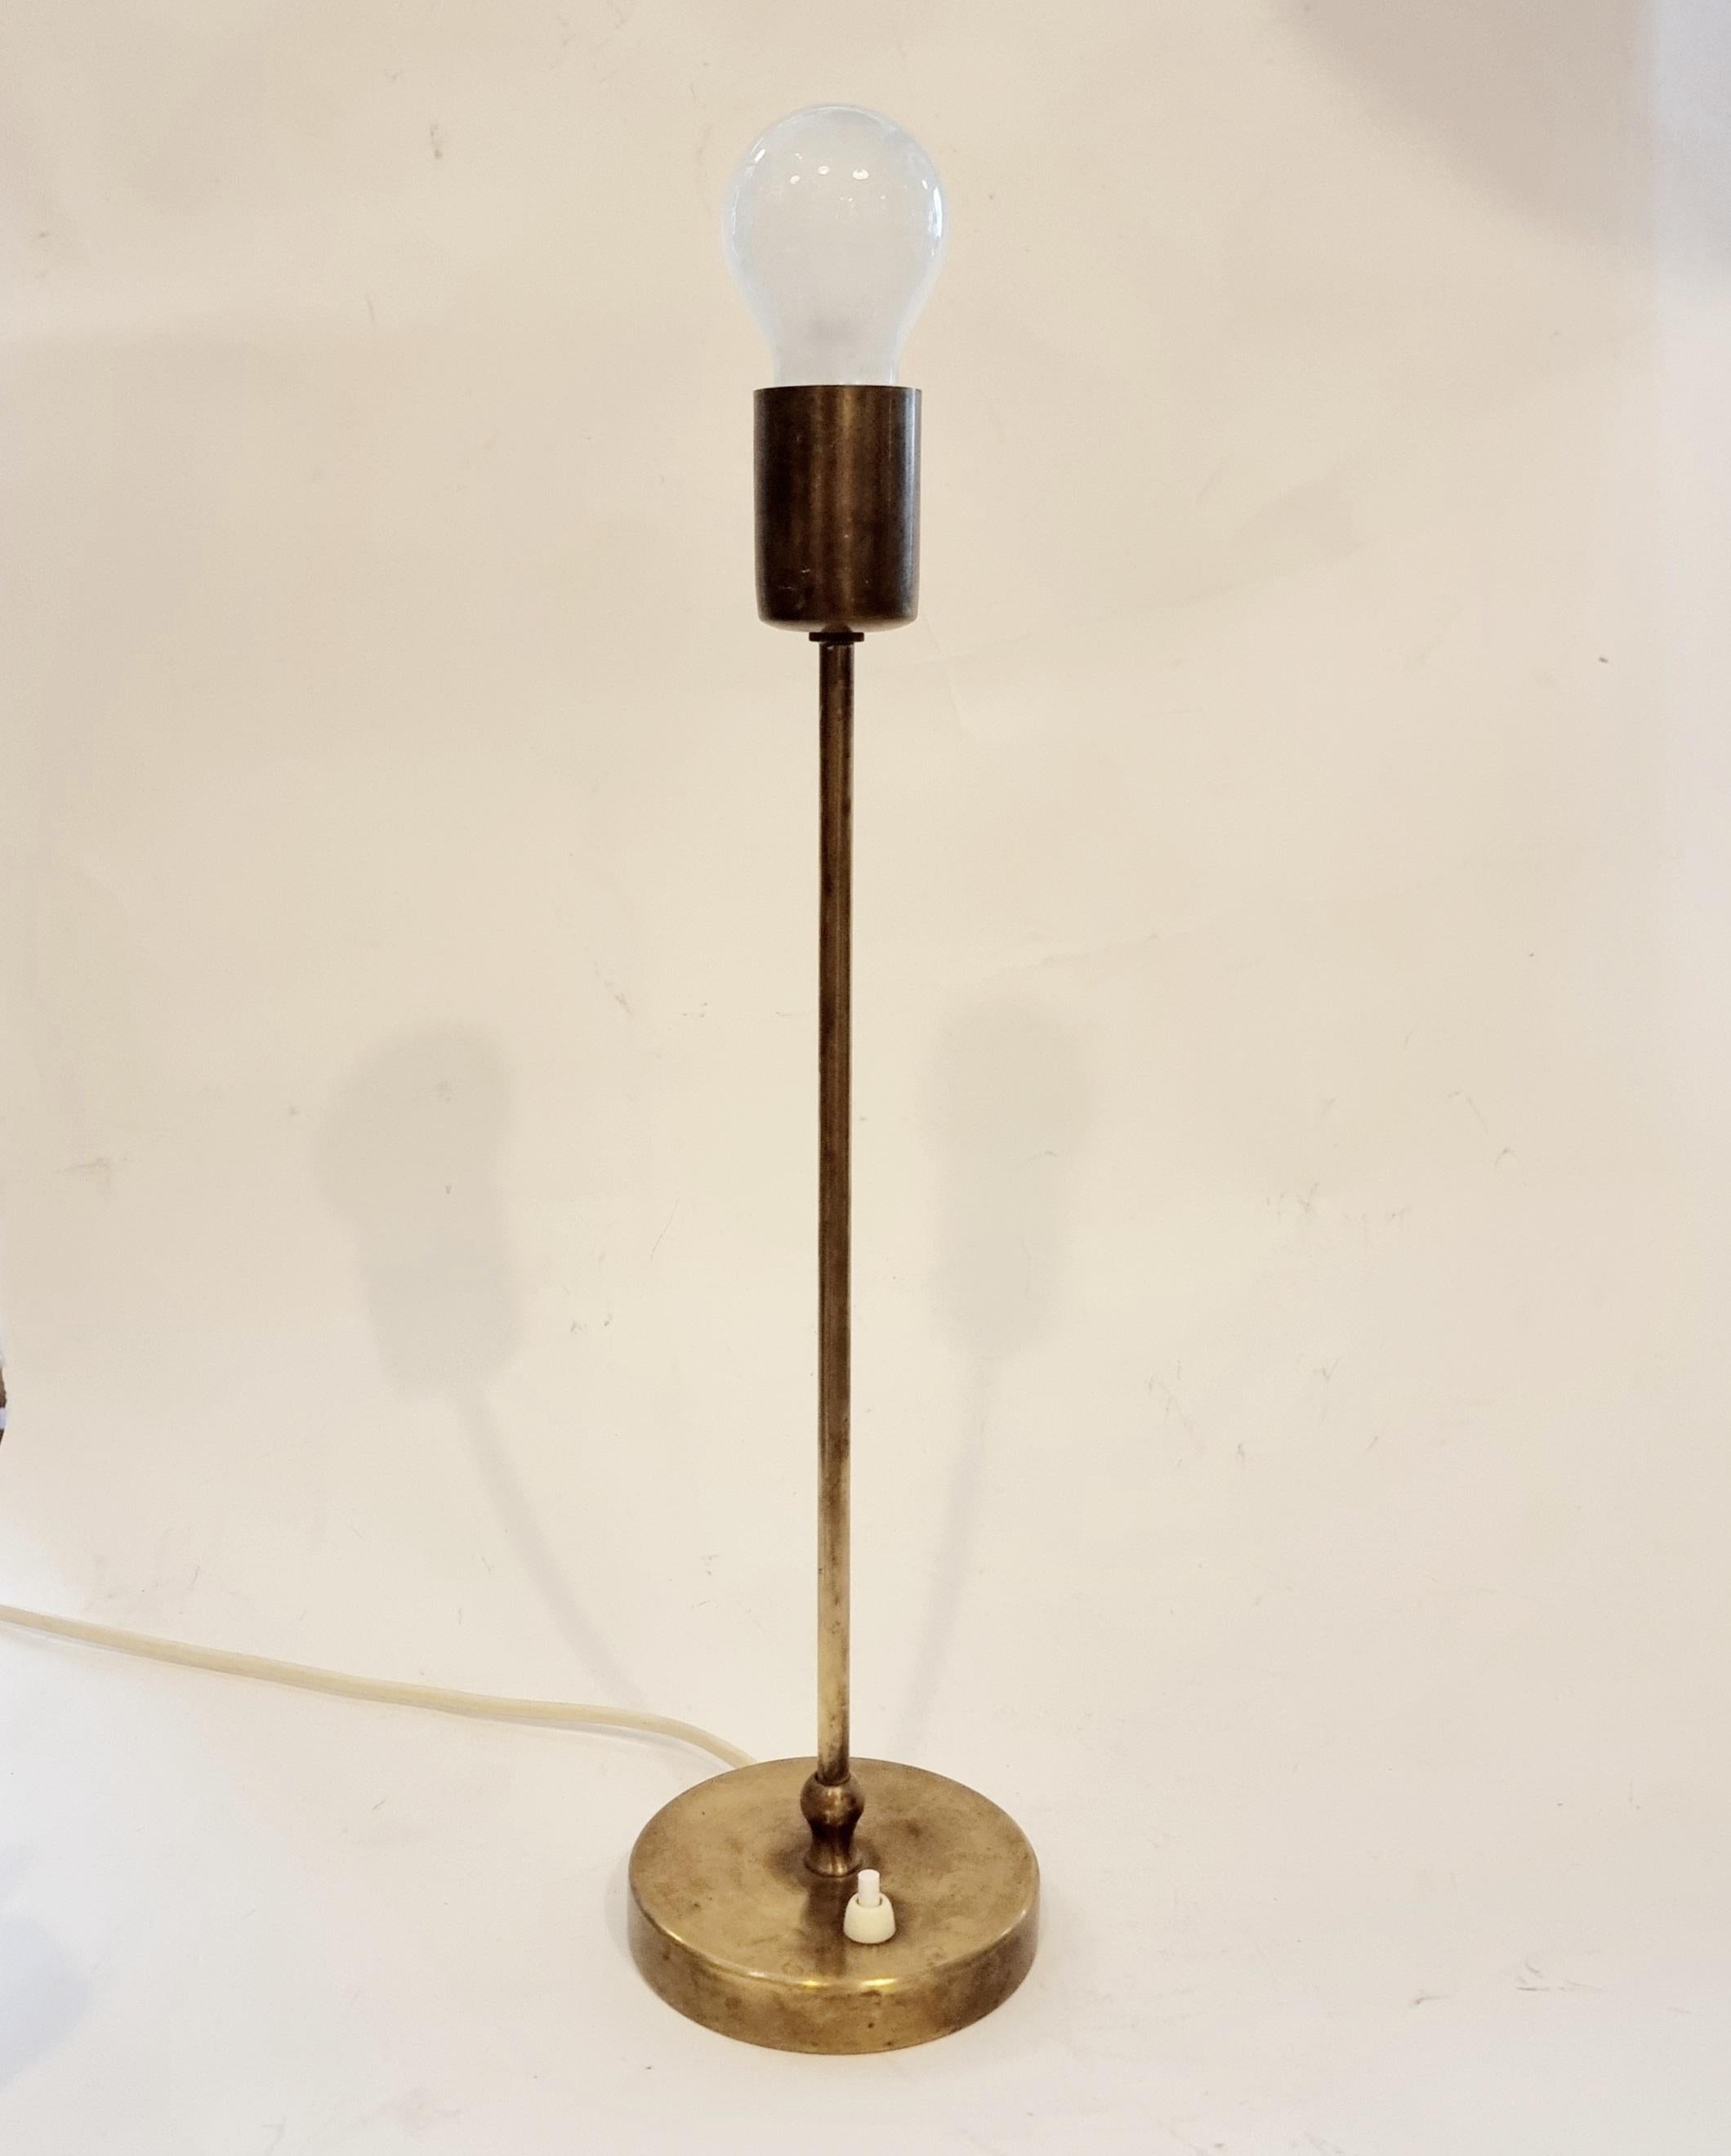 Lampe de table Josef Franks, modèle 3223. Conçu en 1932 pour Firma Svenskt Tenn. 

En laiton massif, marqué Svenskt Tenn 3223. Cet exemplaire a été fabriqué au milieu des années 1900.